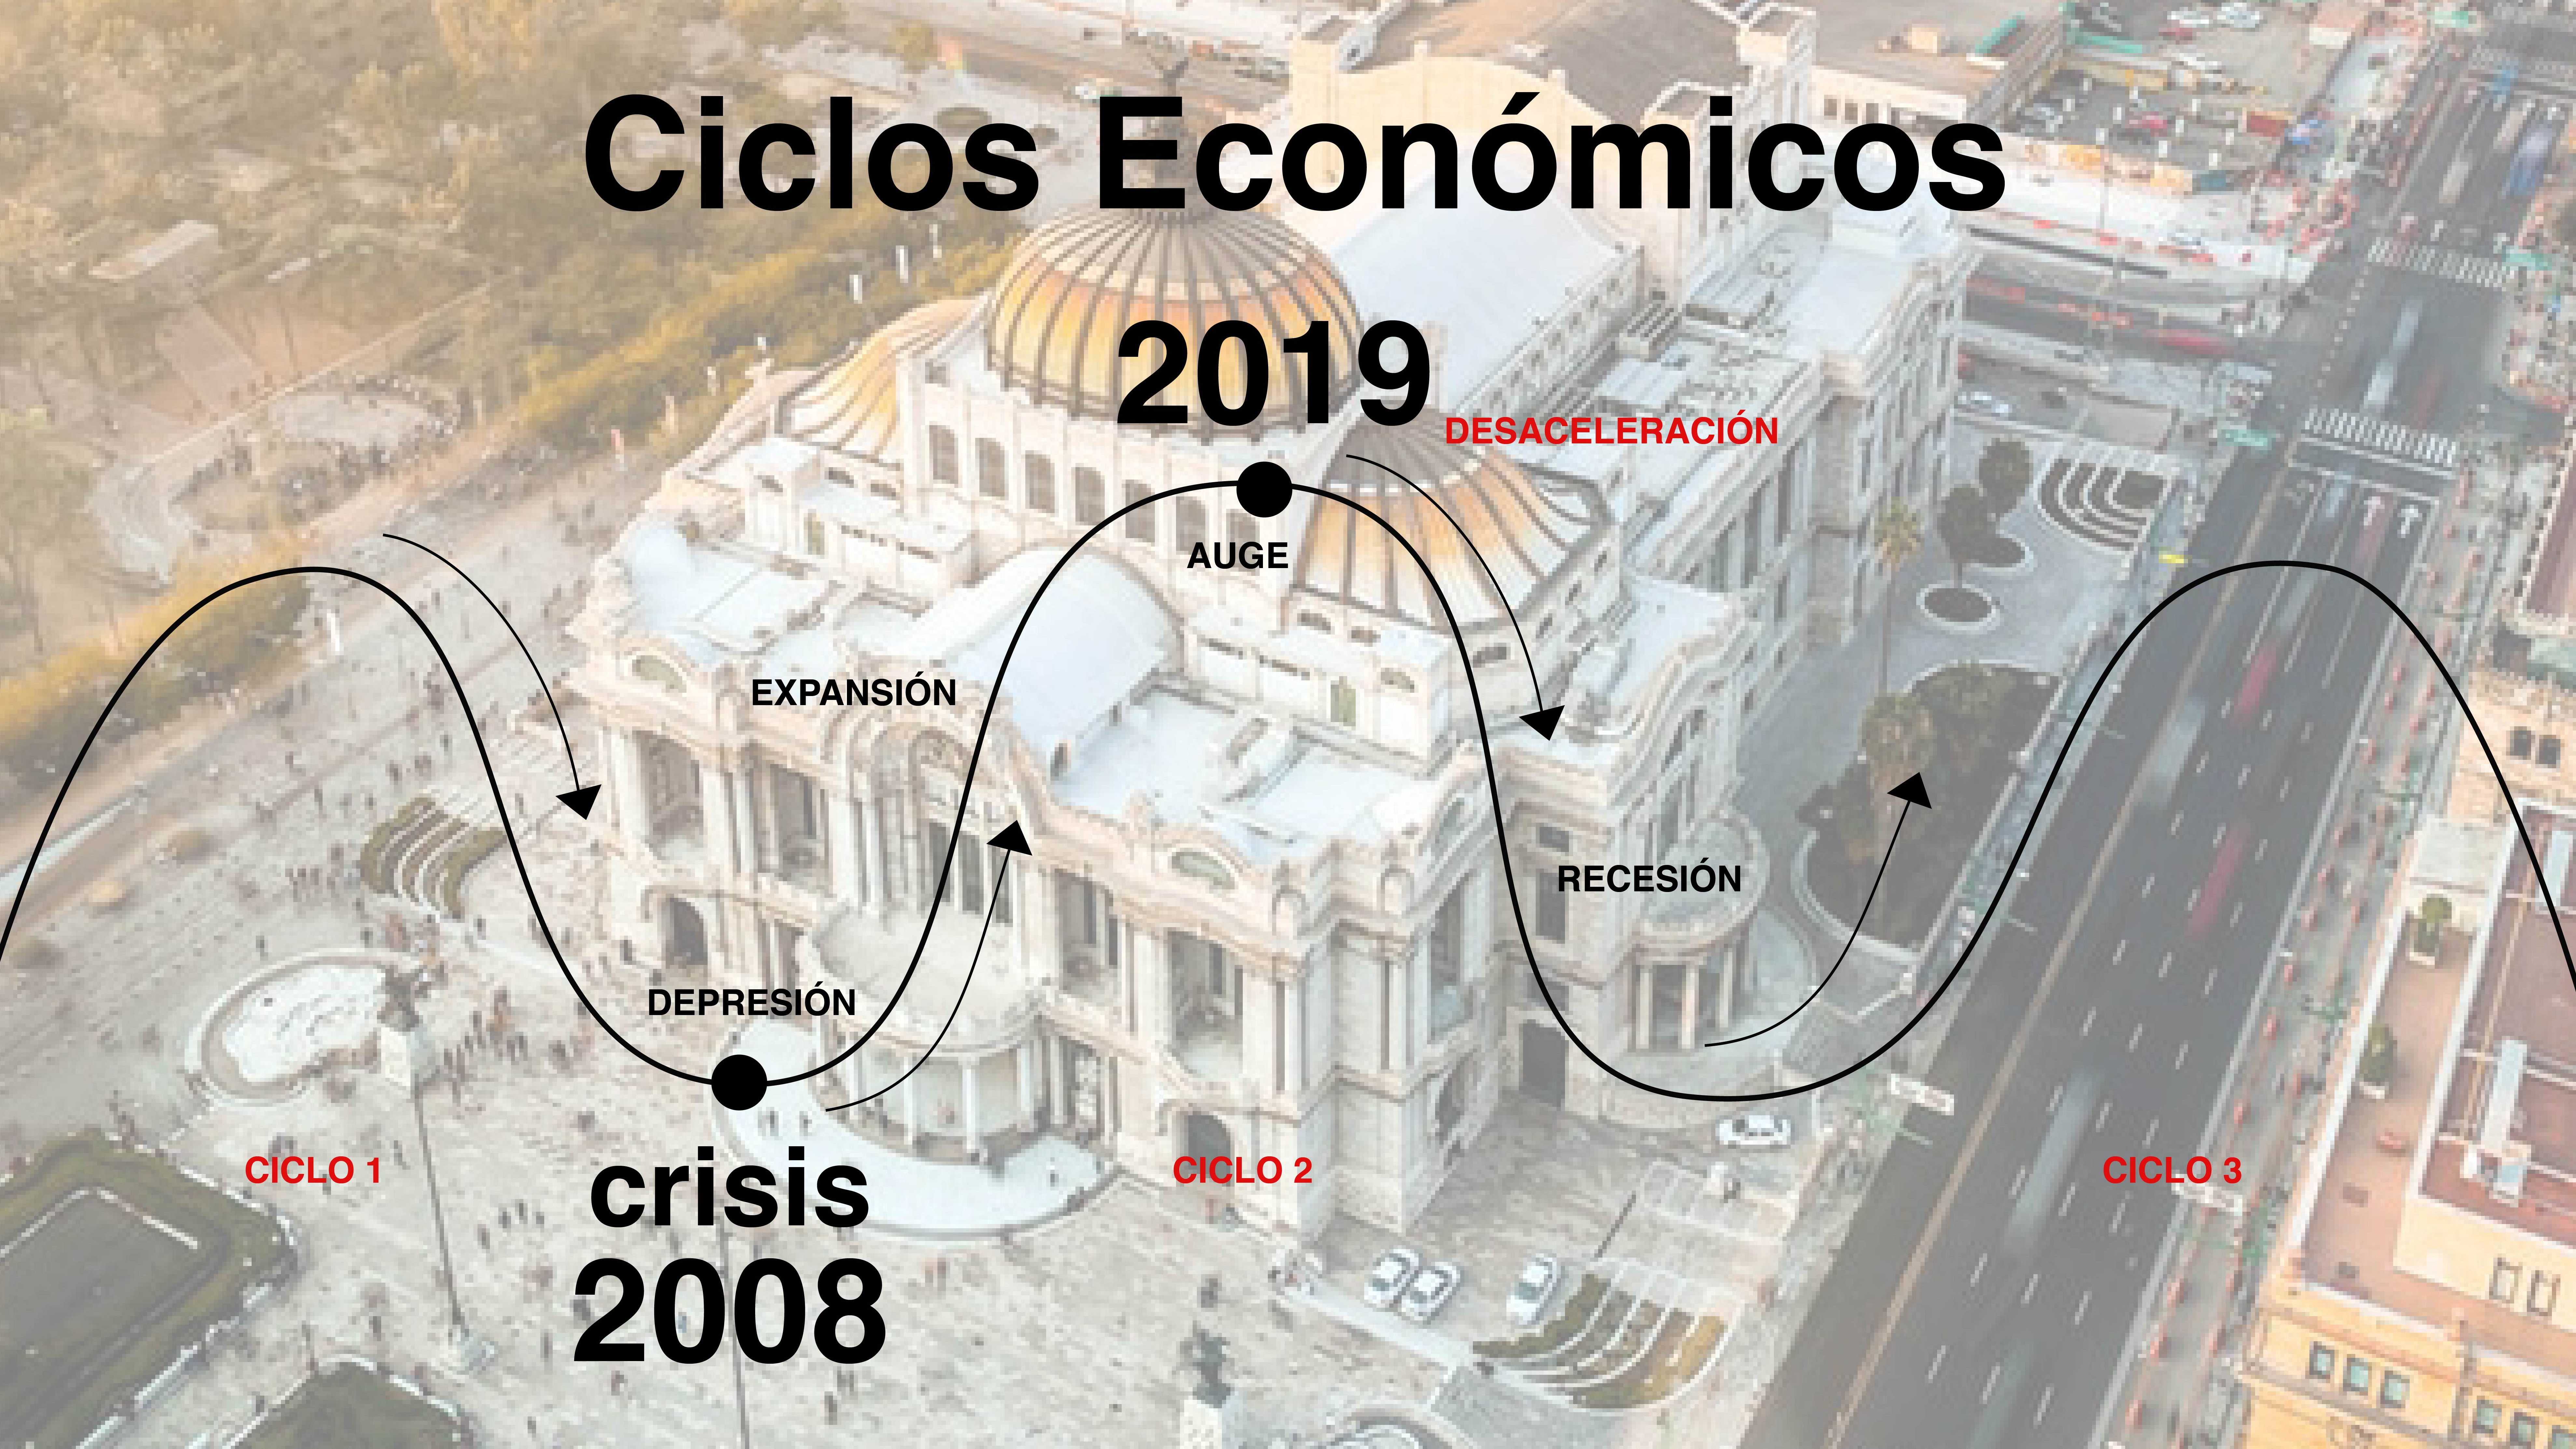 Fases de un ciclo económico: Depresión, Expansión, Auge y Recesión